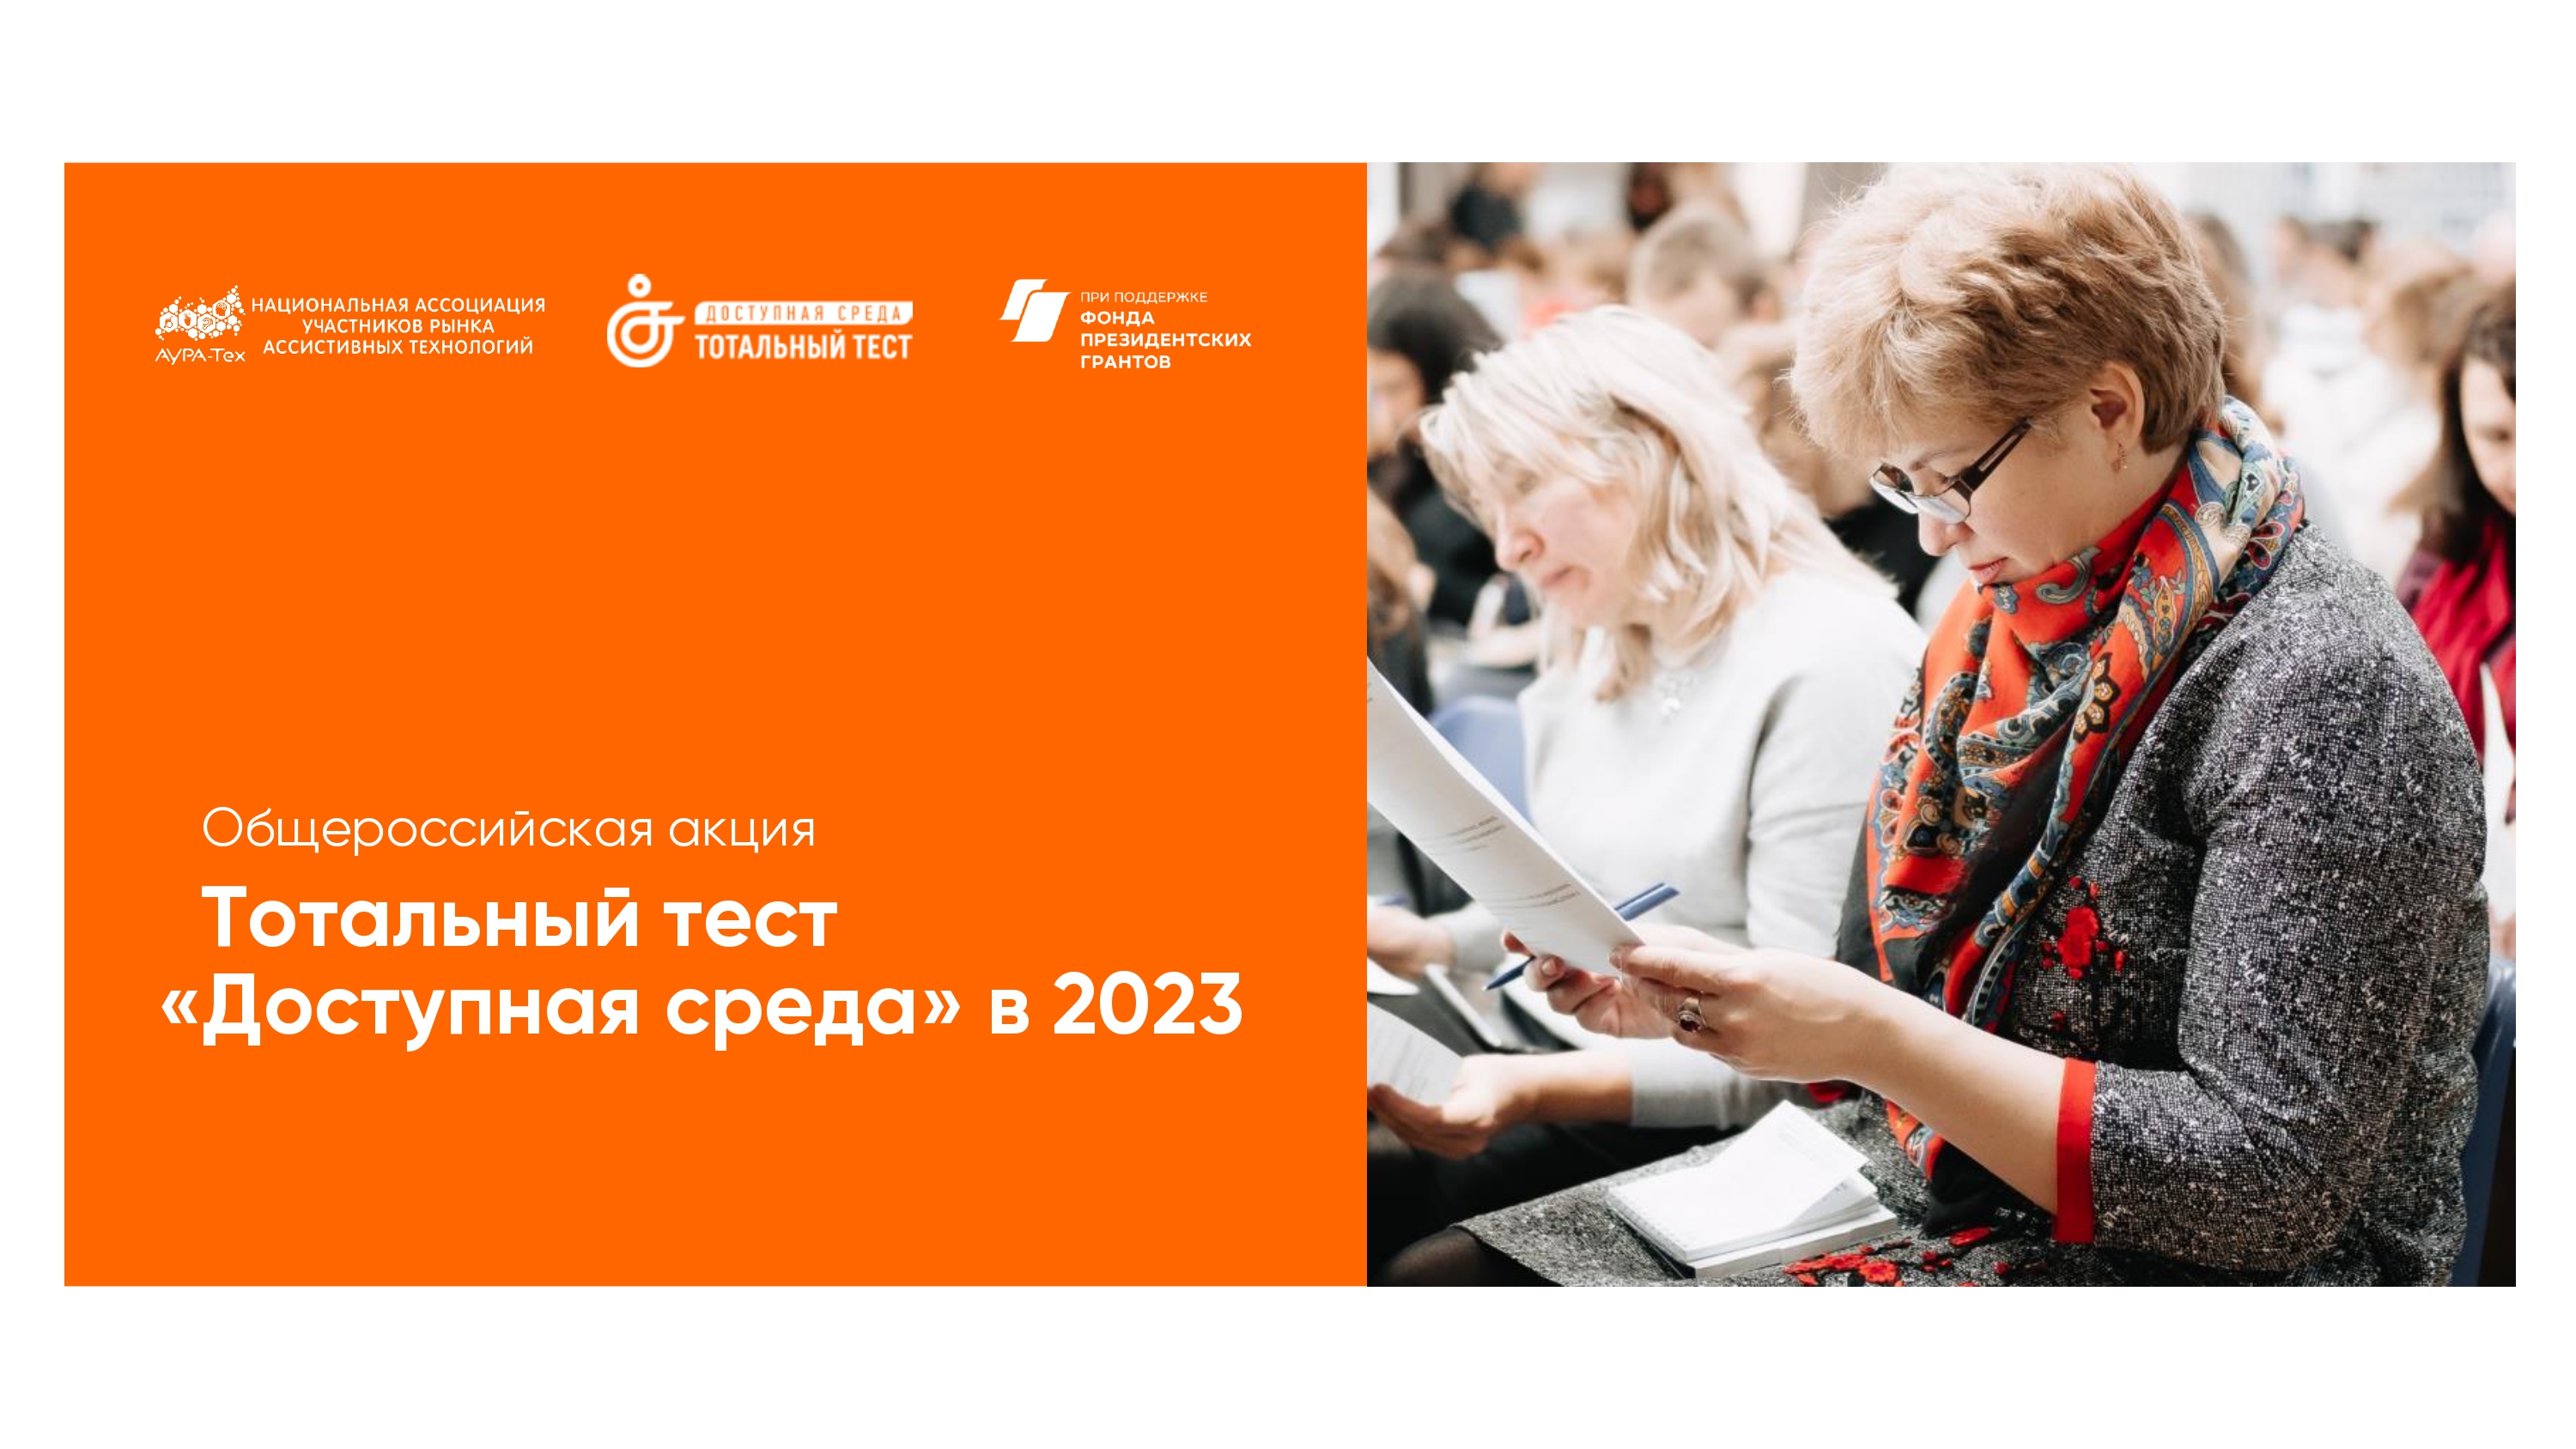 1 декабря 2023 года, накануне Международного дня инвалидов, стартует Общероссийская акция Тотальный тест «Доступная среда».